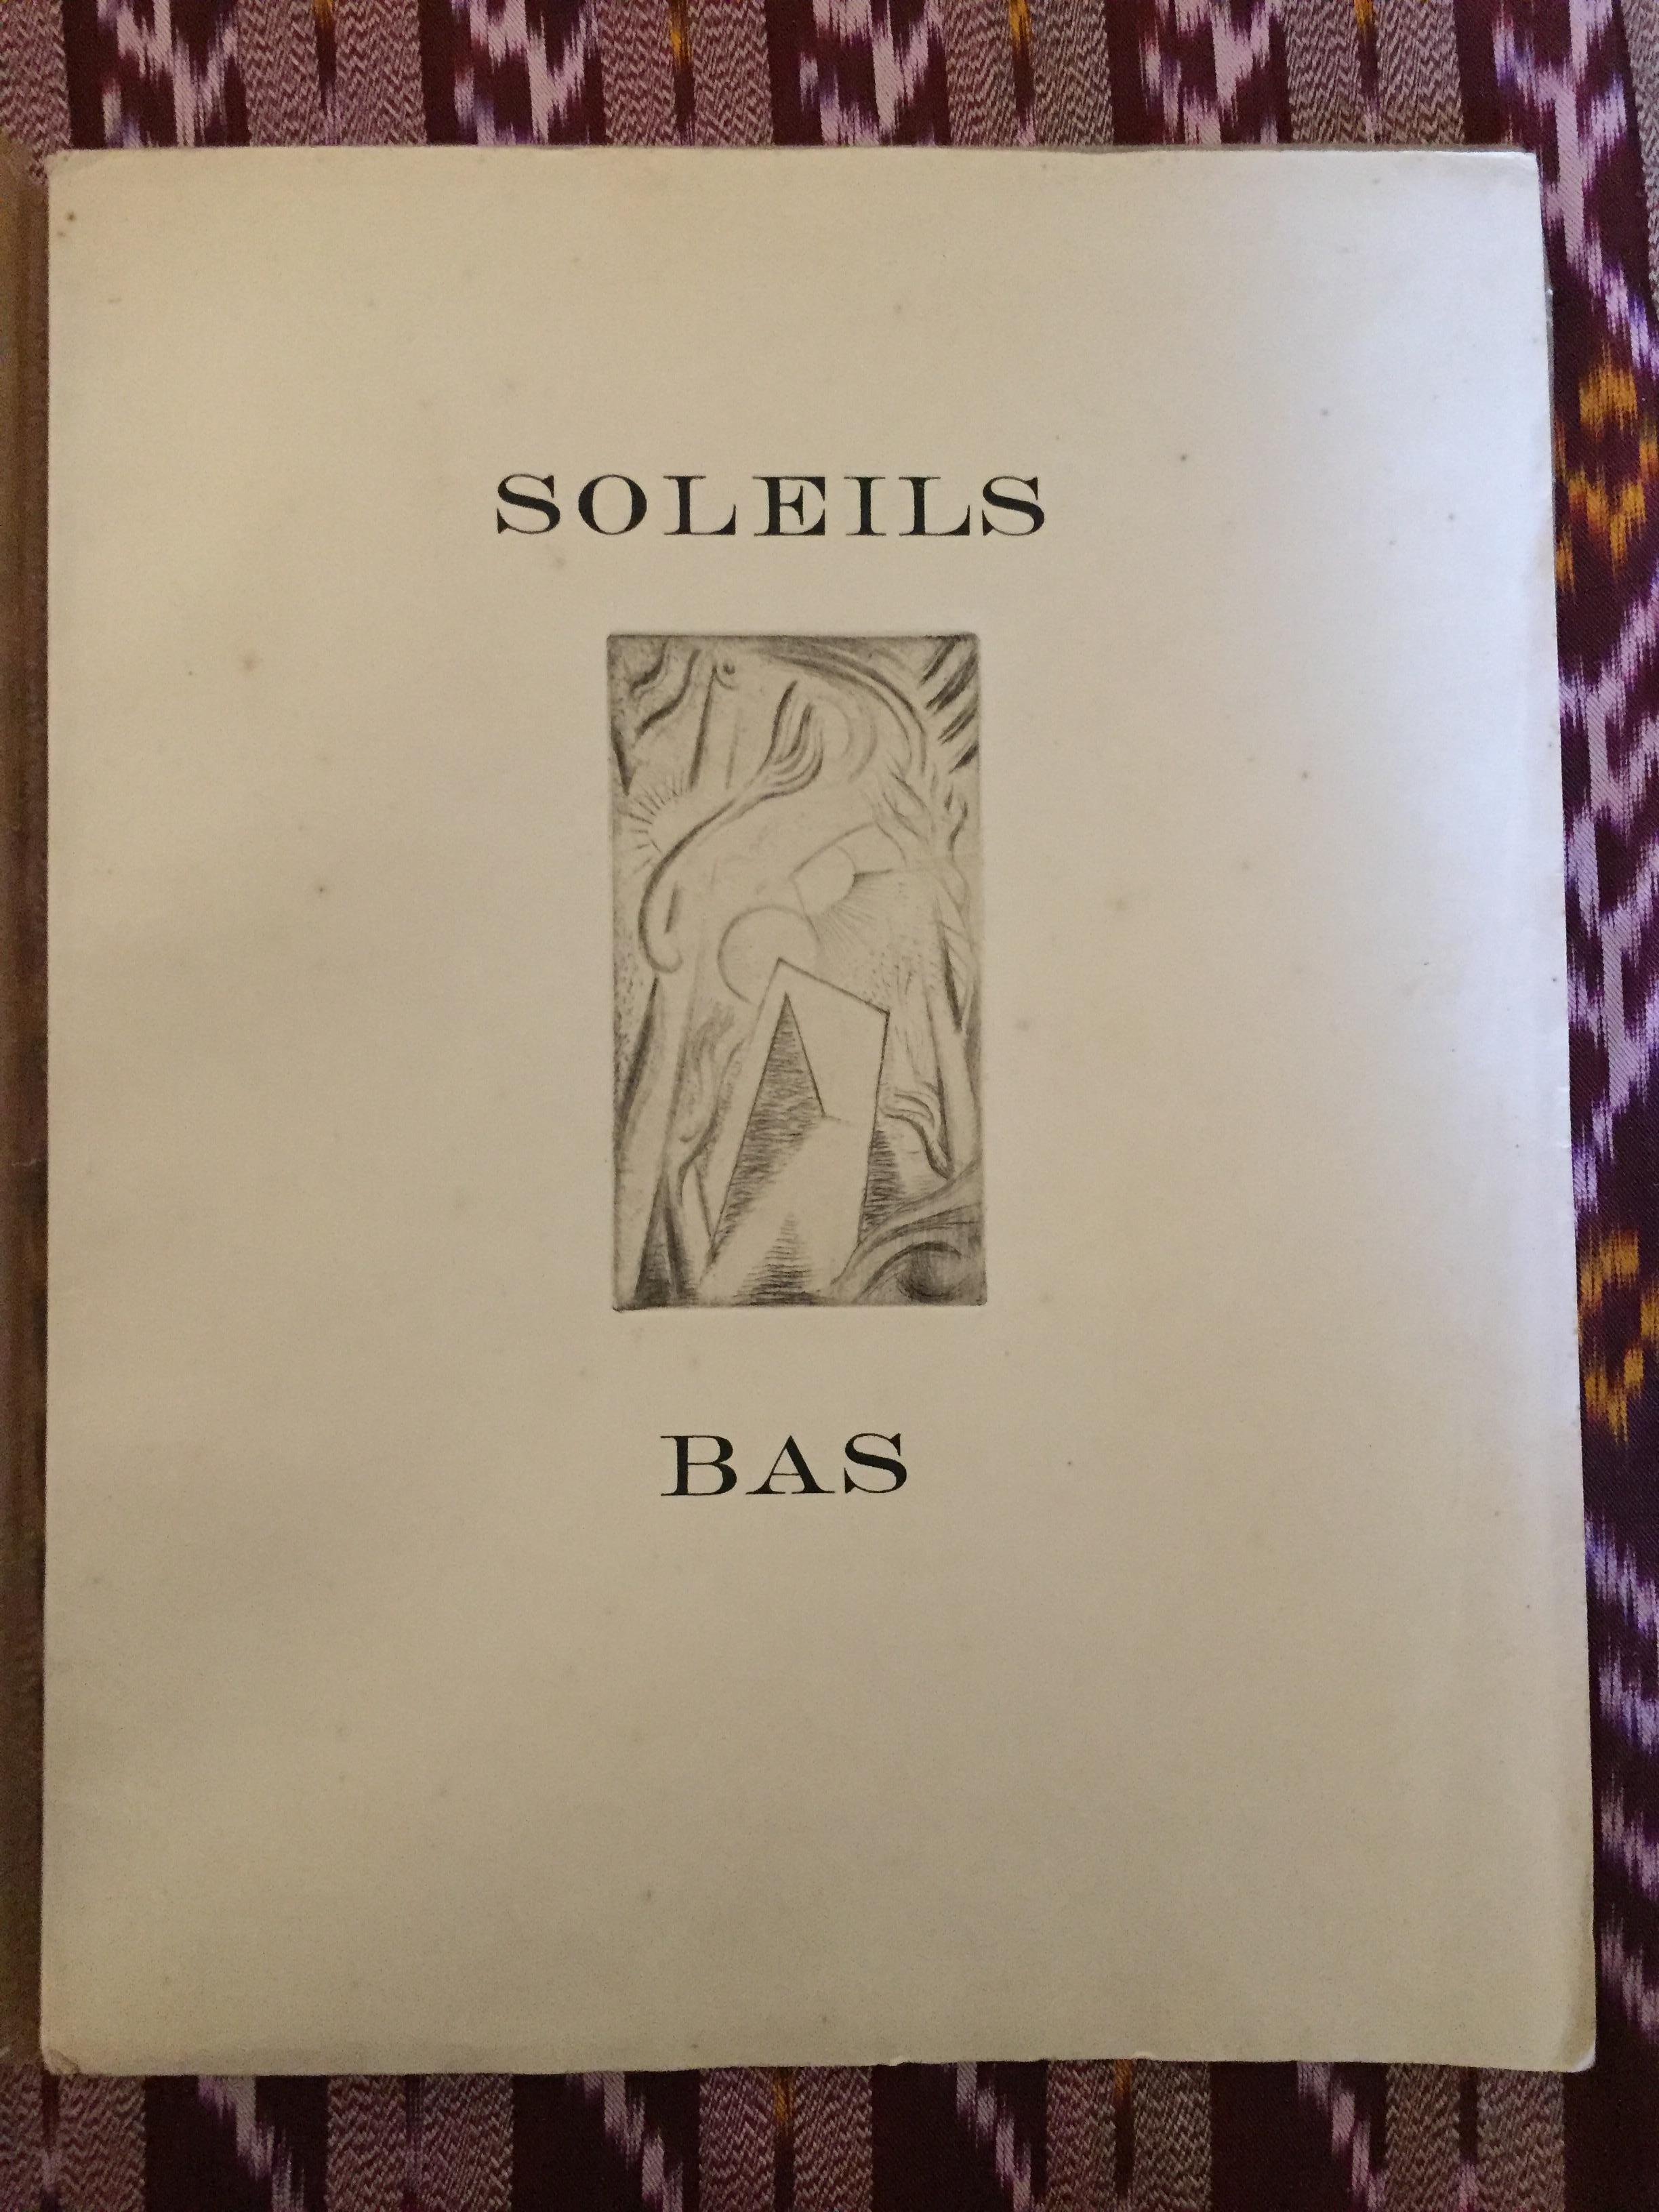 Soleil-Basis – seltenes illustriertes Buch von Andr Masson – 1924 – Art von André Masson, Georges Limbour